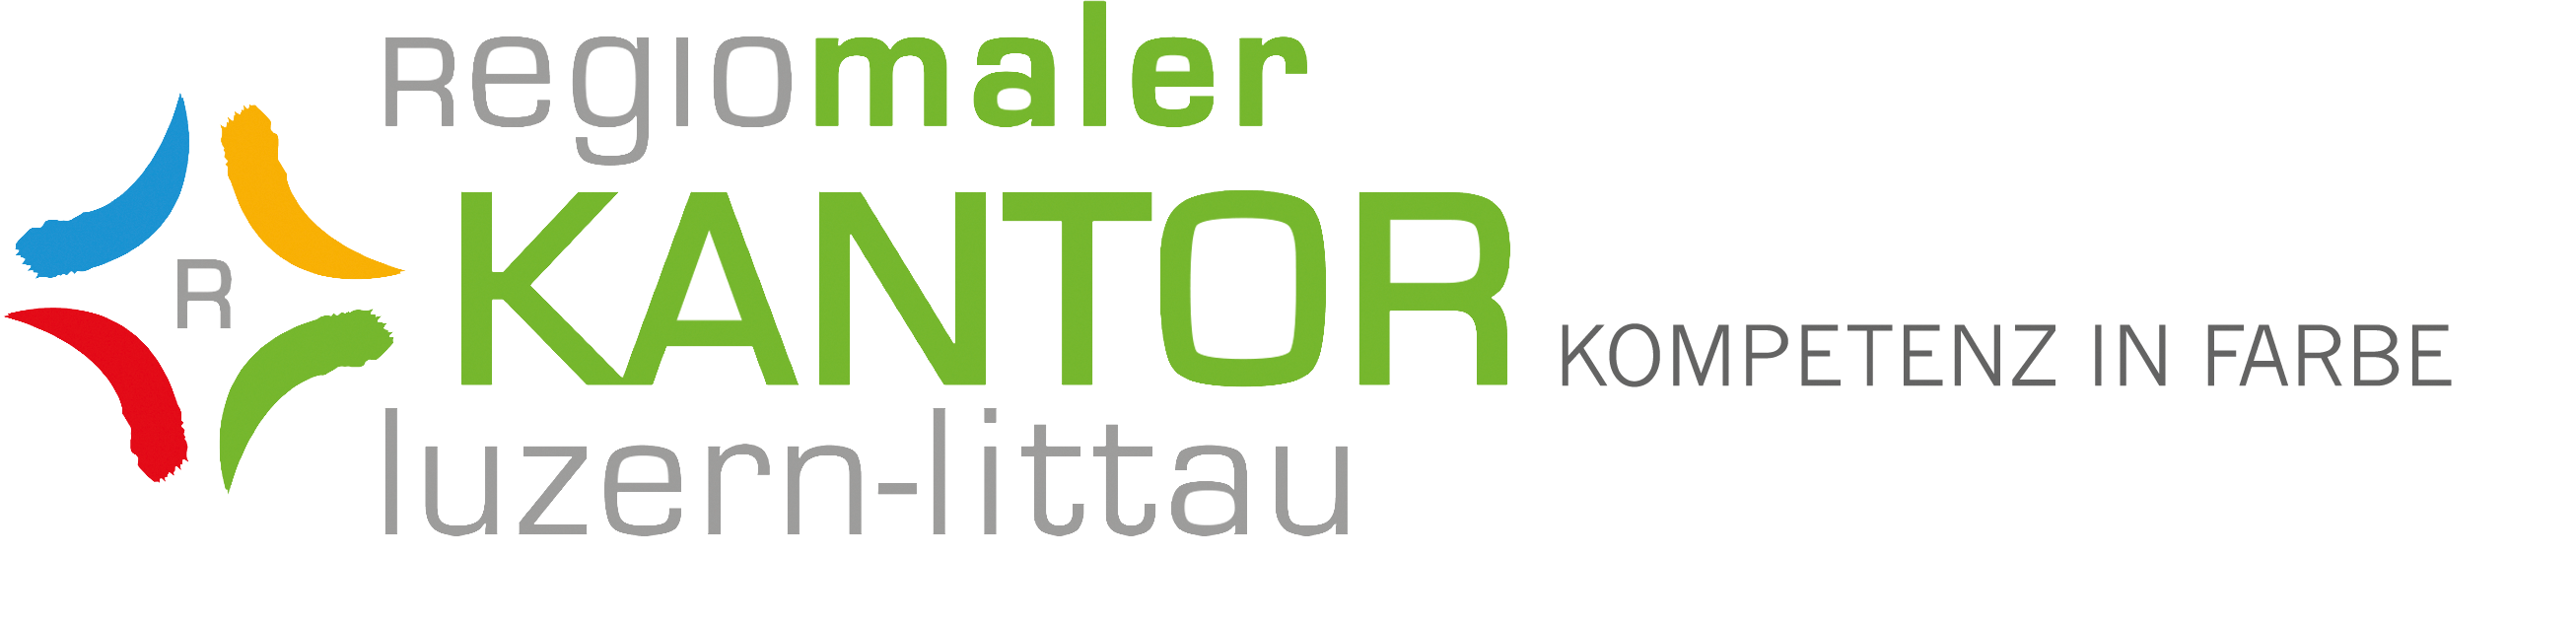 Regiomaler Kantor GmbH